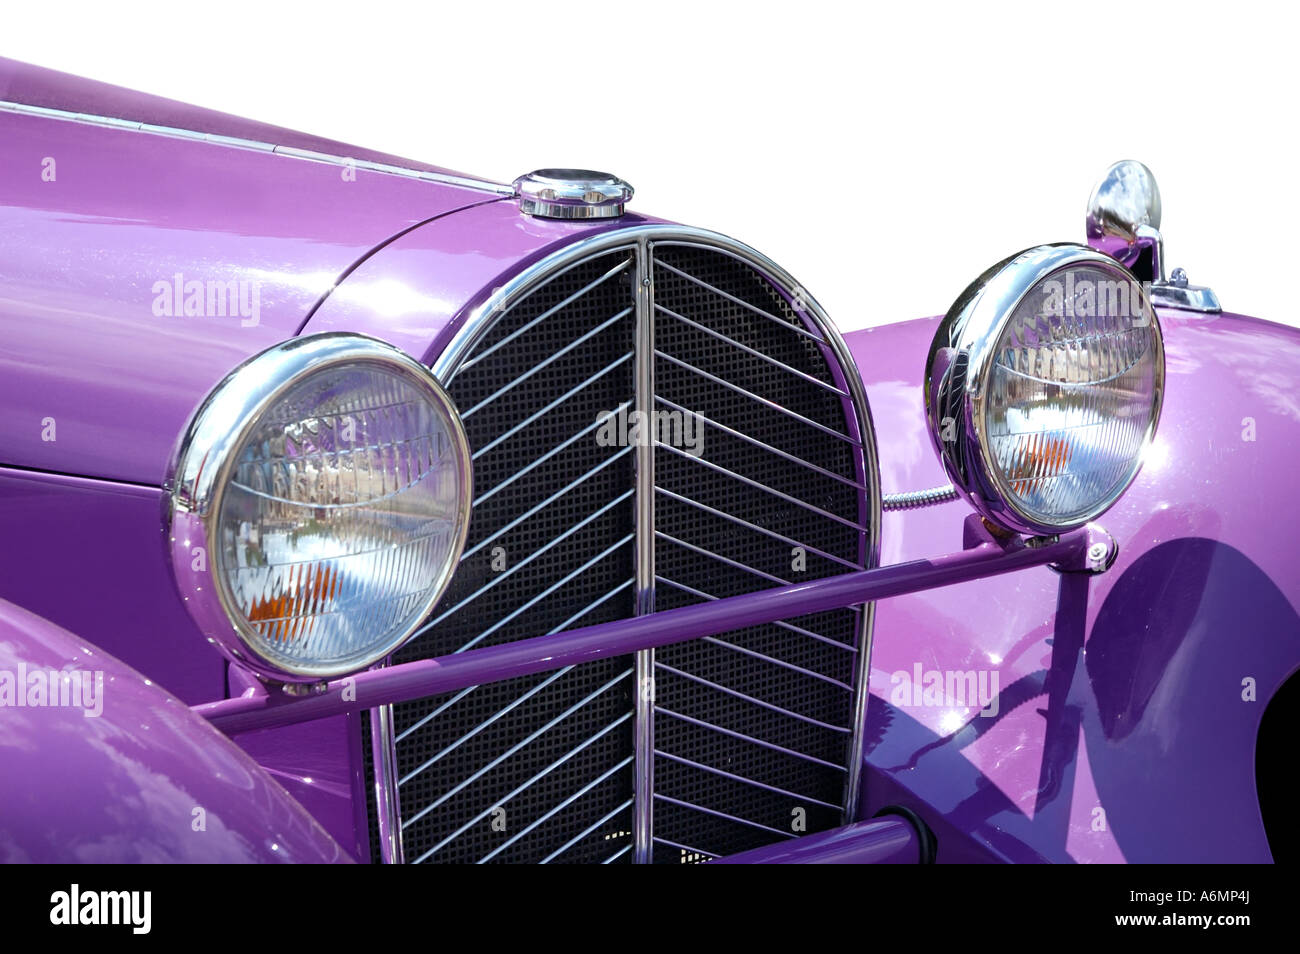 Violeta Bugatti Royale Tipo 41 coches de época 1927-1933 Foto de stock